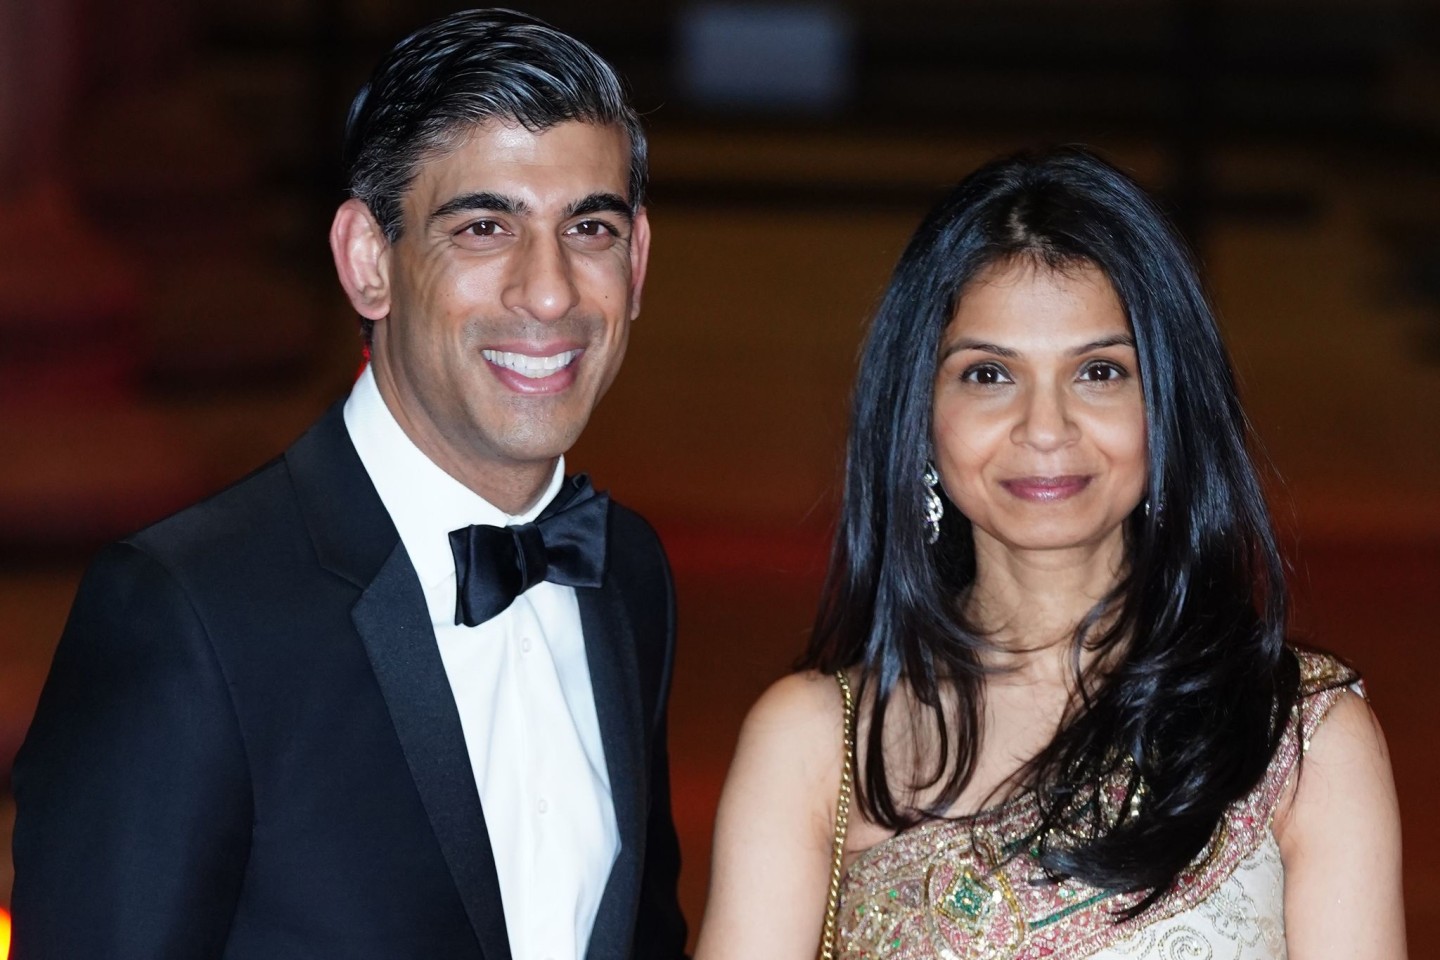 Sie gehören zu den Reichsten im Vereinigten Königreich: der Politiker Rishi Sunak und seine Frau Akshata Murthy.